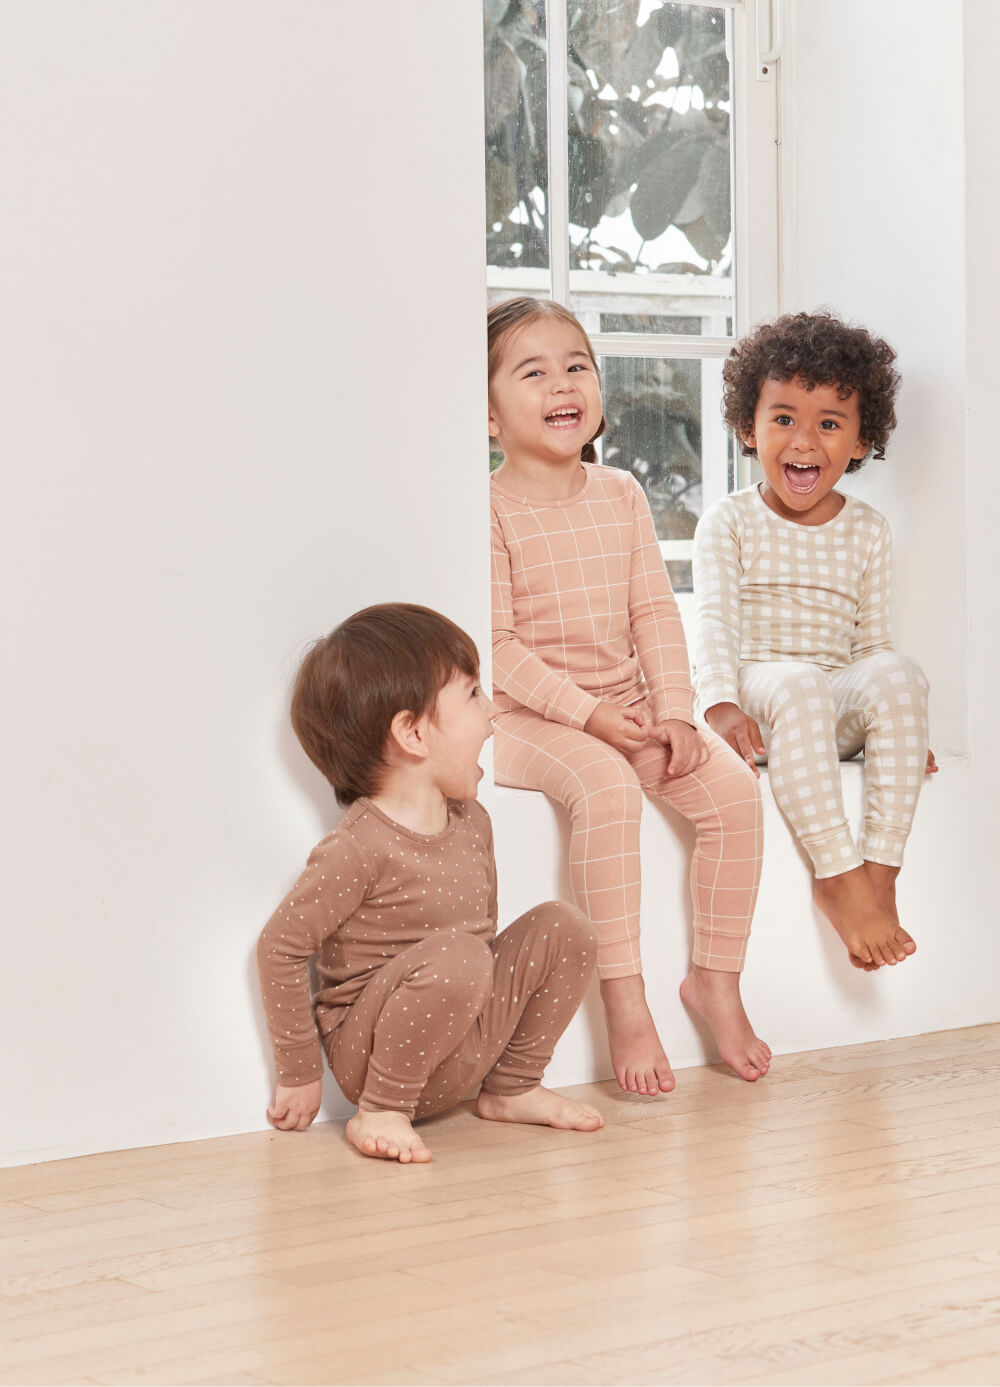 Luxury Baby Pink Silk Pajama Set (Initials Available) – MoriJasmine